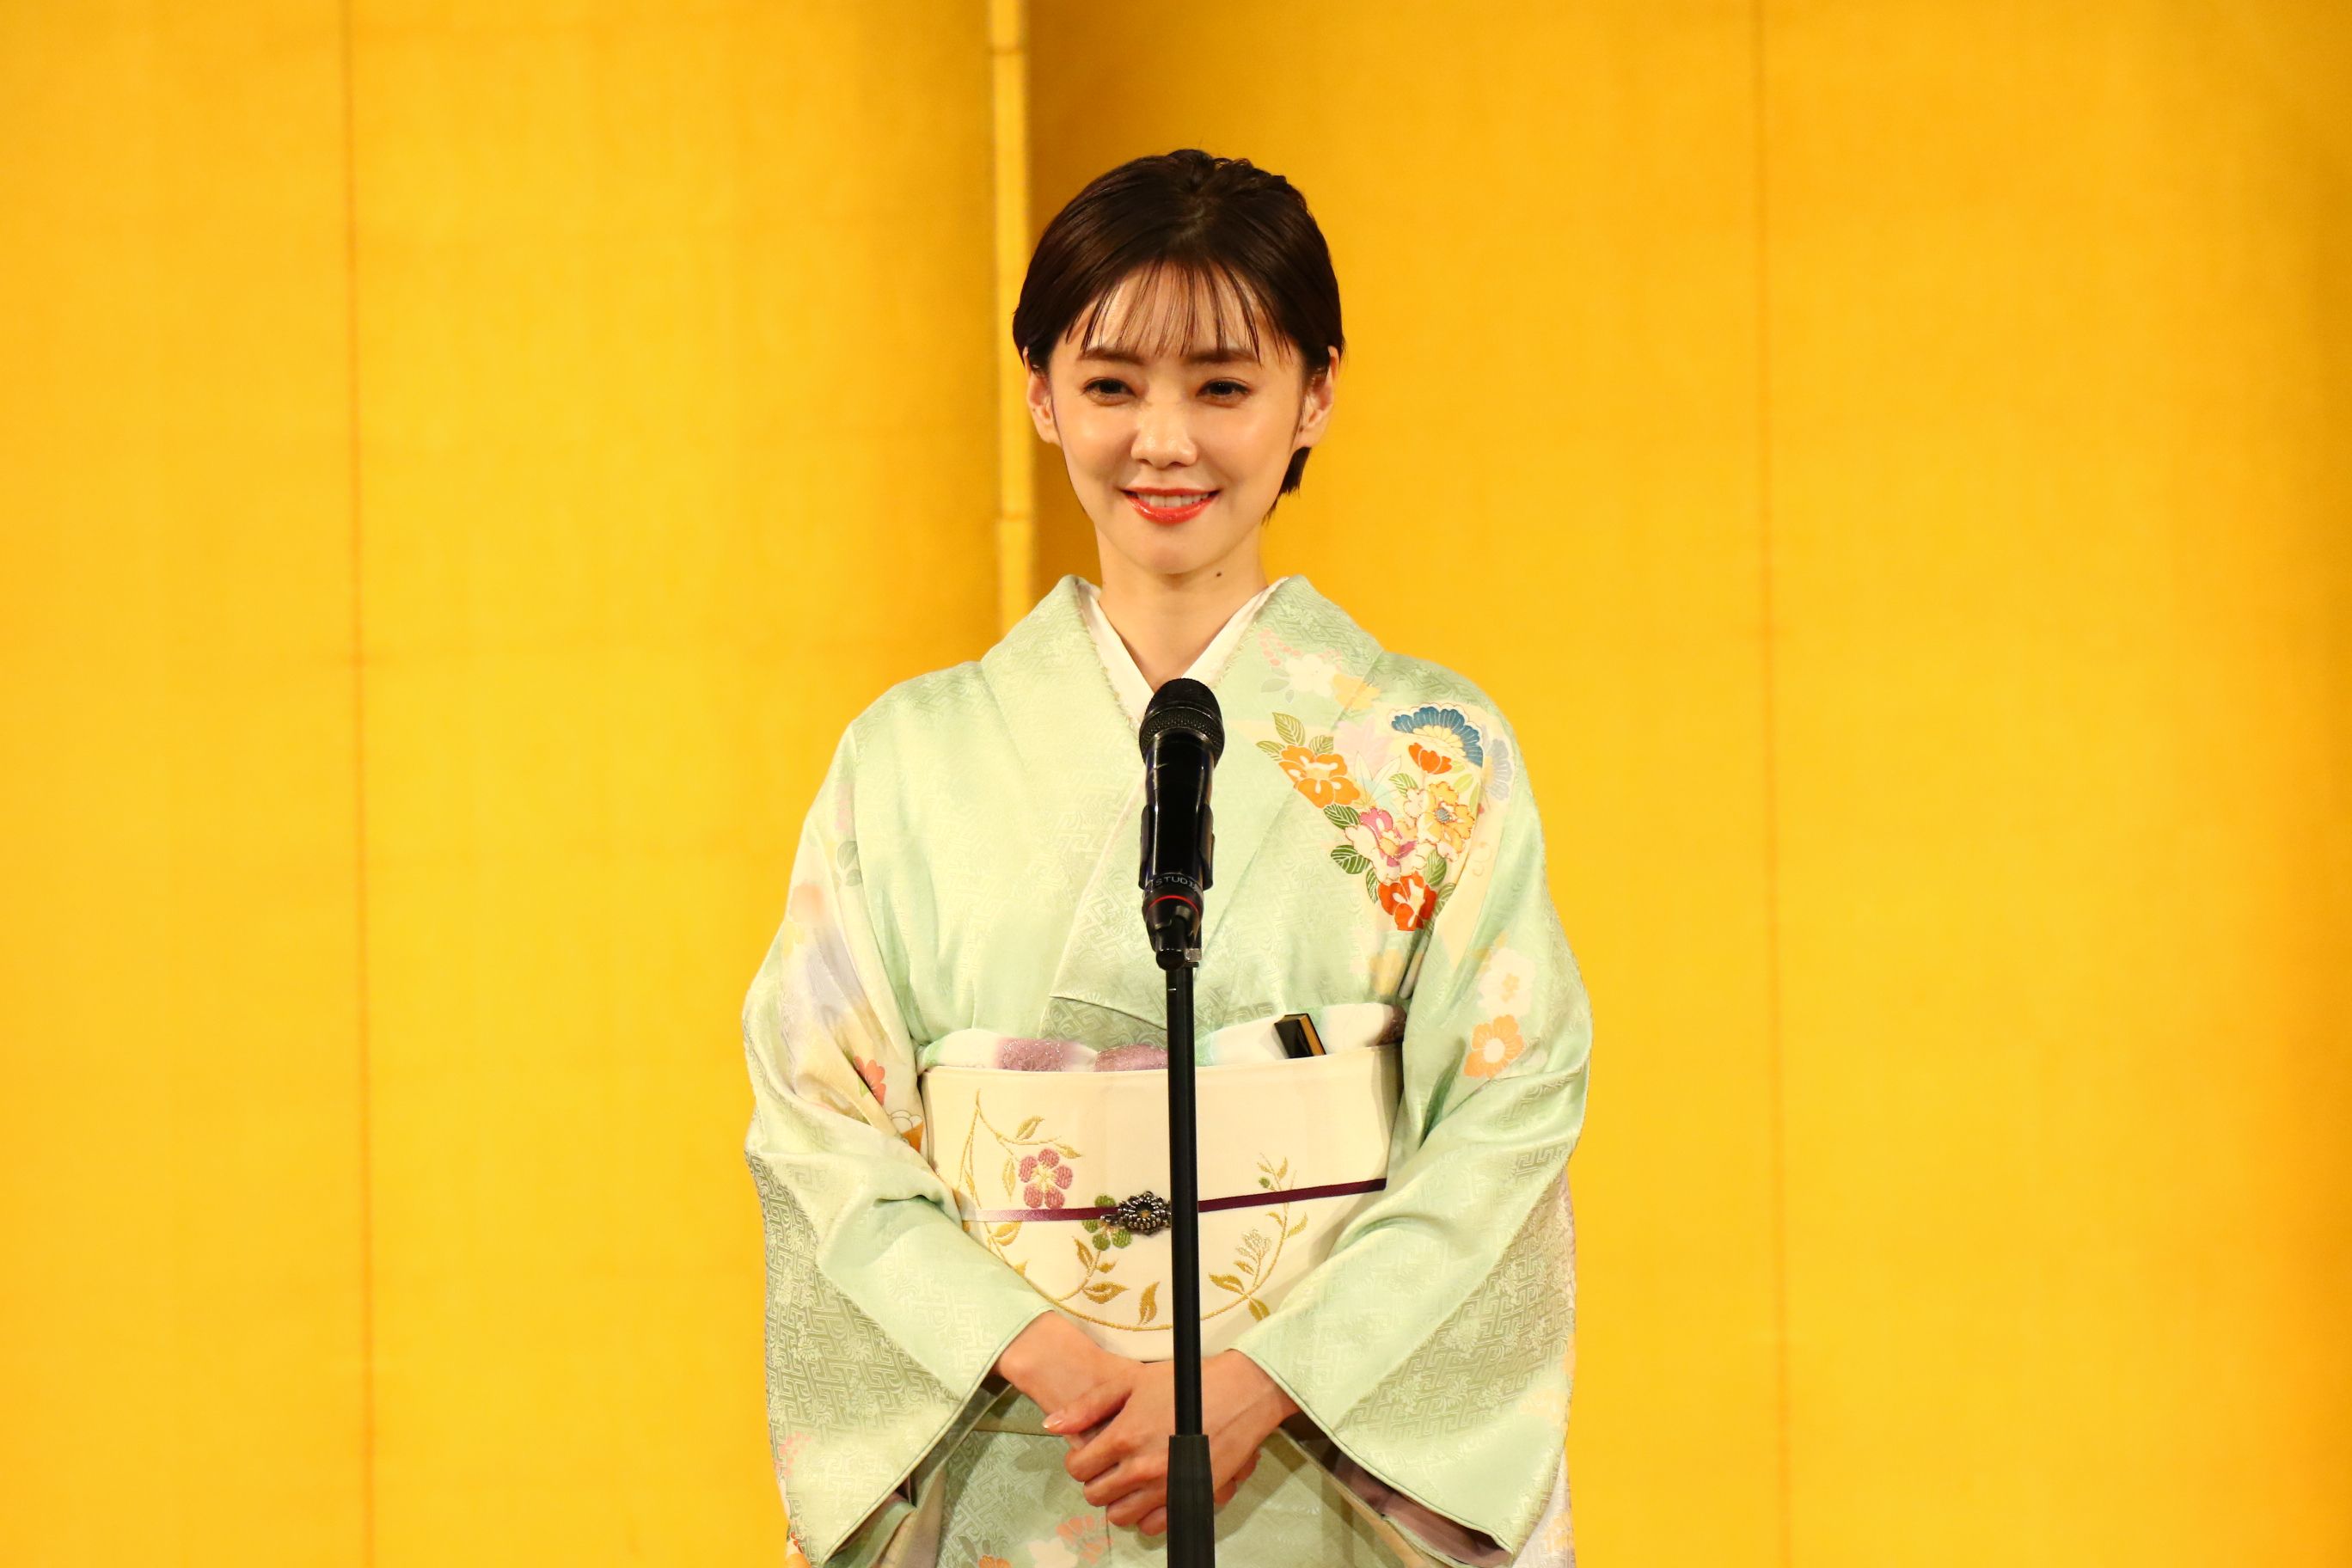 倉科カナさん、京都国際映画祭での爽やかな訪問着の装い。実は令和の